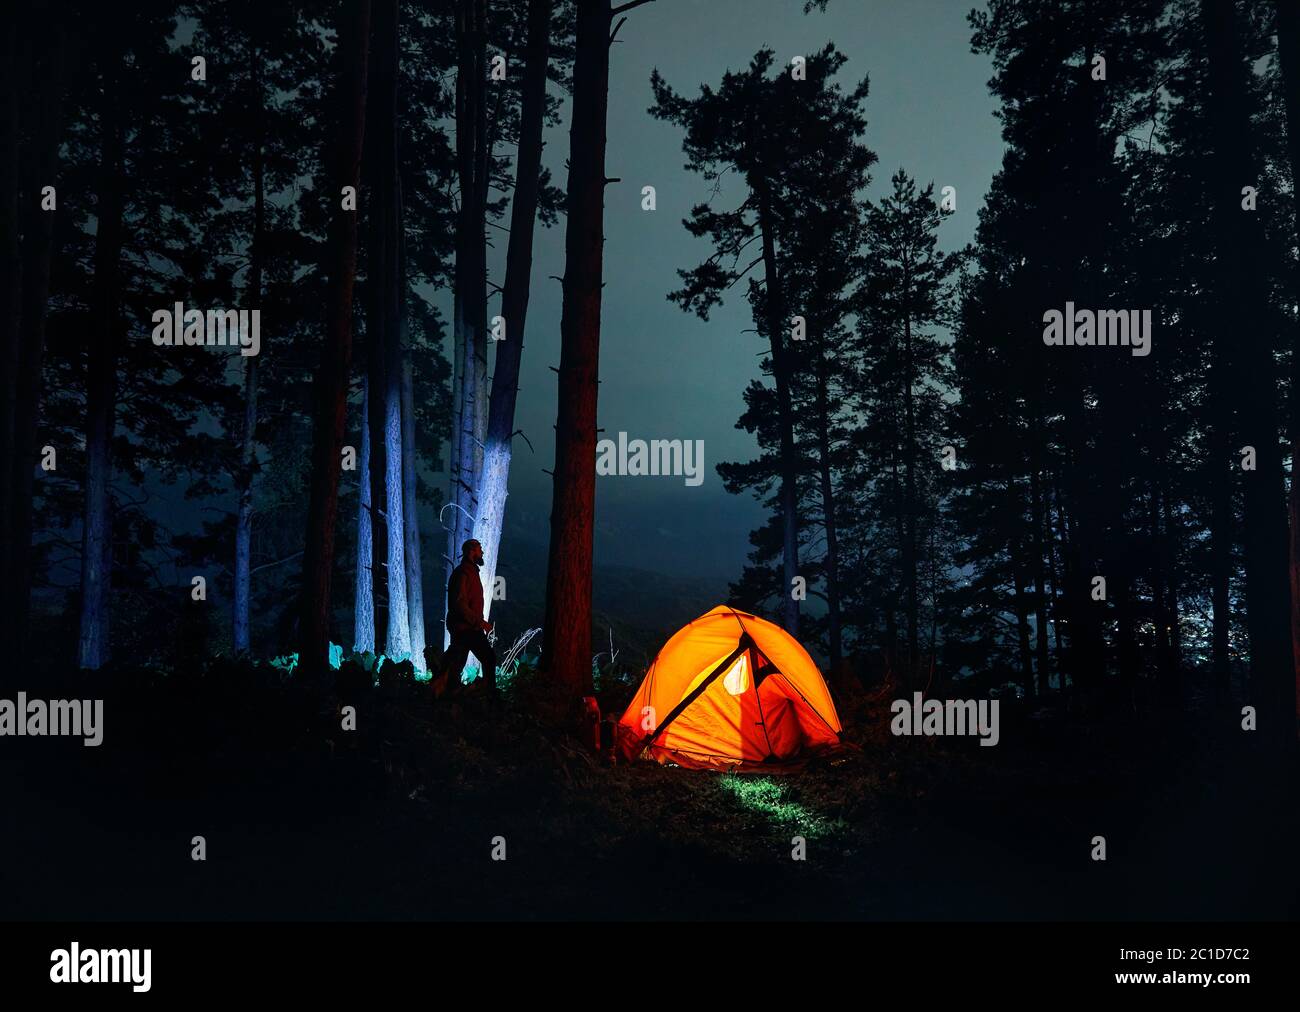 Bärtiger Mann Silhouette ist gegen Baumstamm im Nachtwald in der Nähe glühenden orange Zelt in den Bergen zu Fuß. Stockfoto